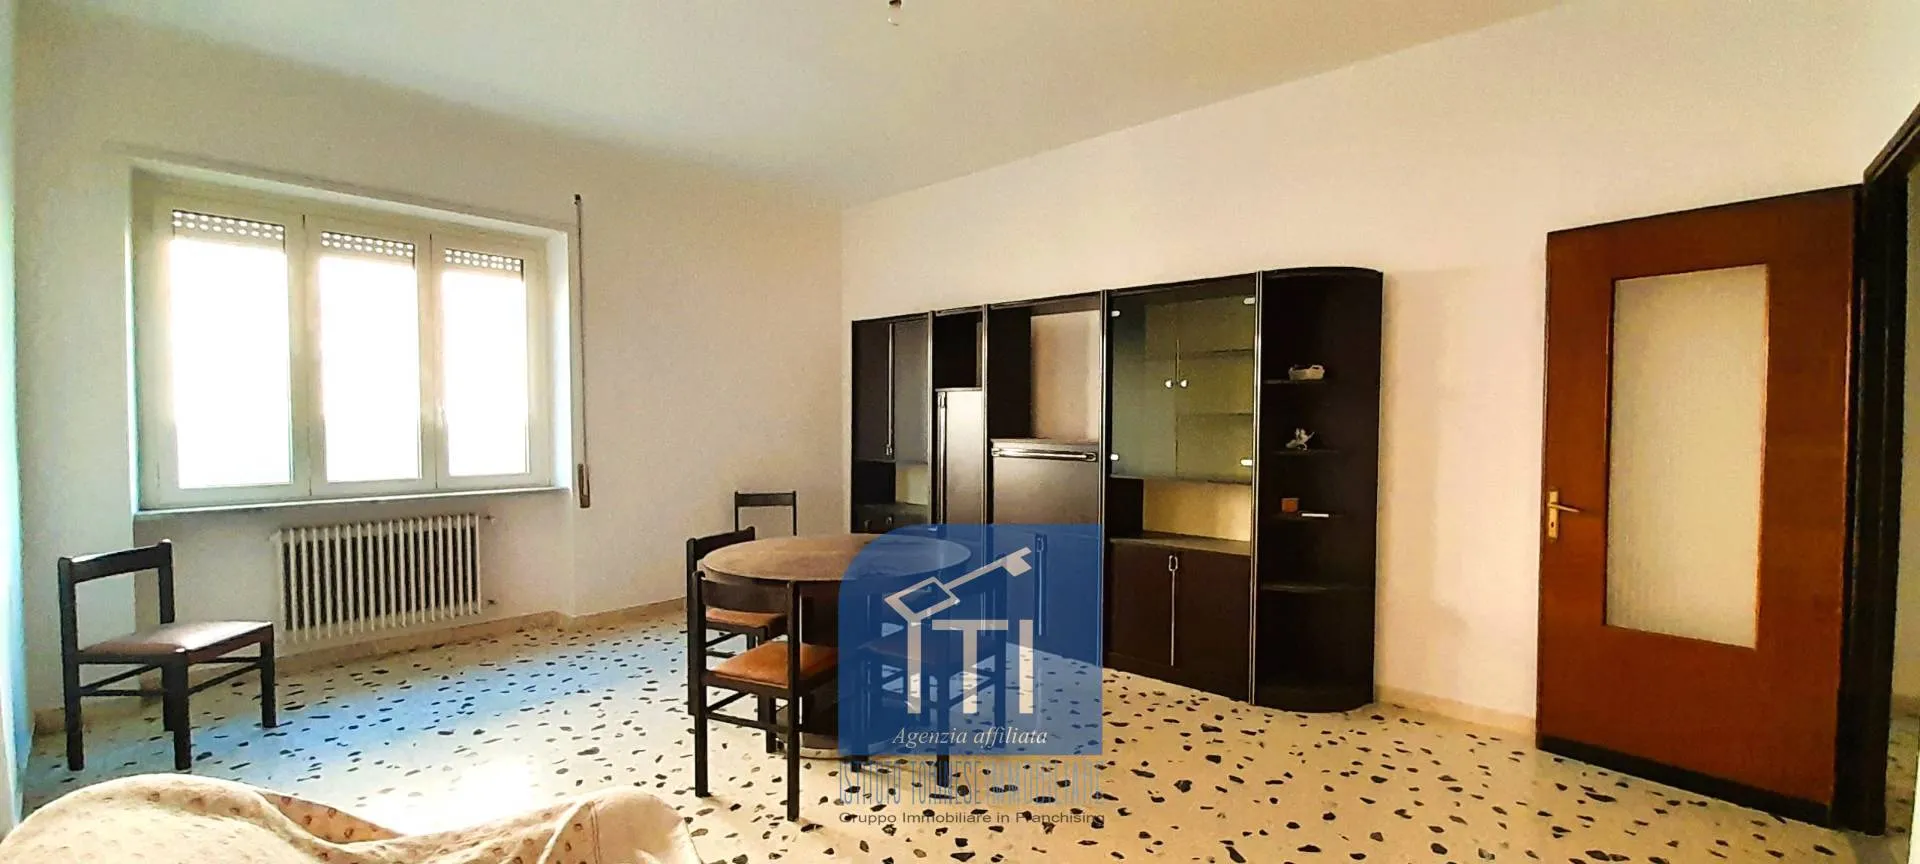 Immagine per Appartamento in vendita a Sant'Elia Fiumerapido via san sebastiano